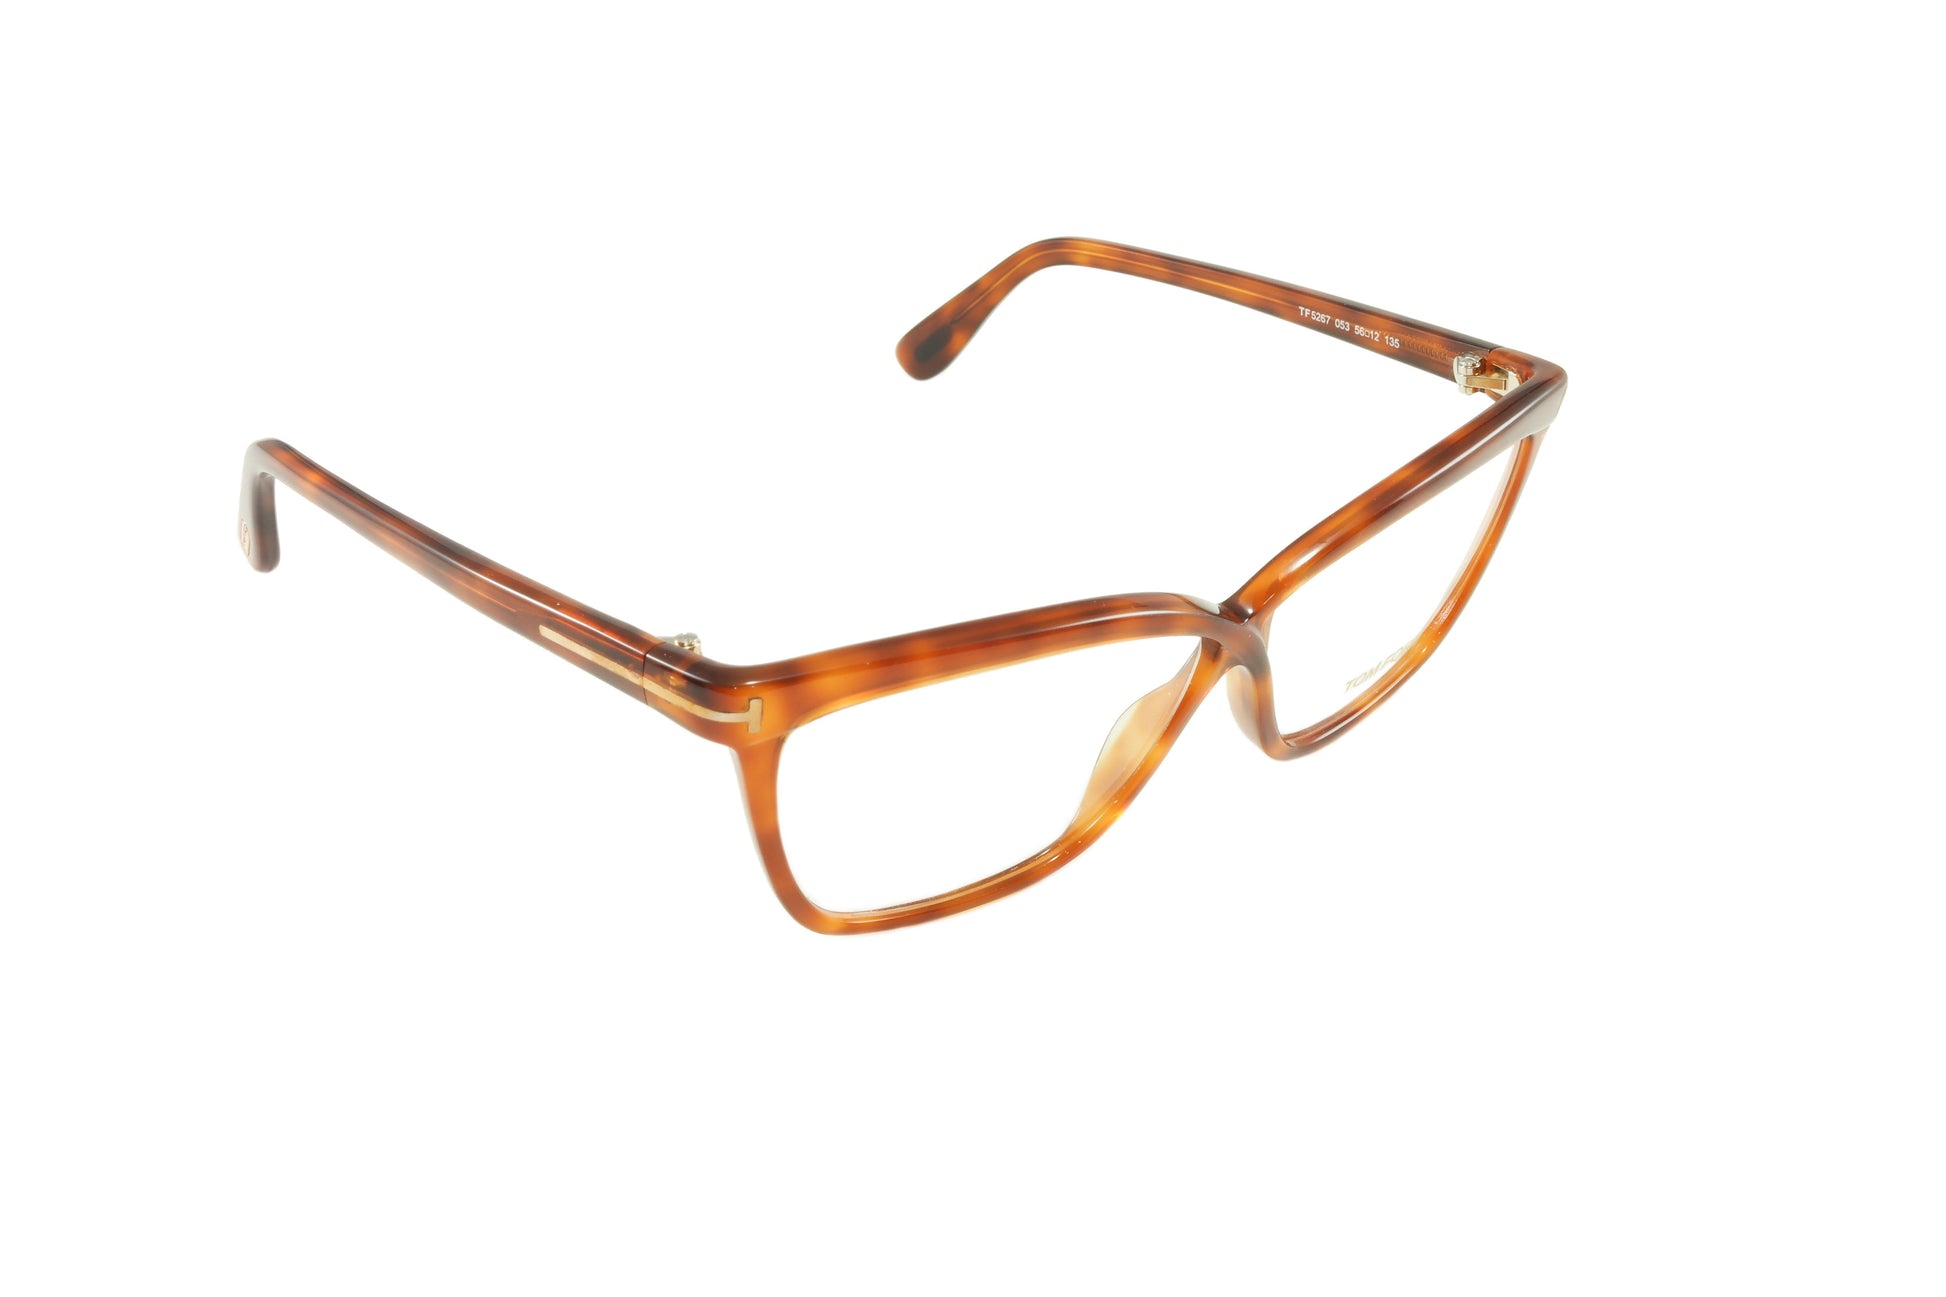 Tom Ford Eyeglasses Frame TF5267 053 Light Havana Brown Italy Made - Frame Bay